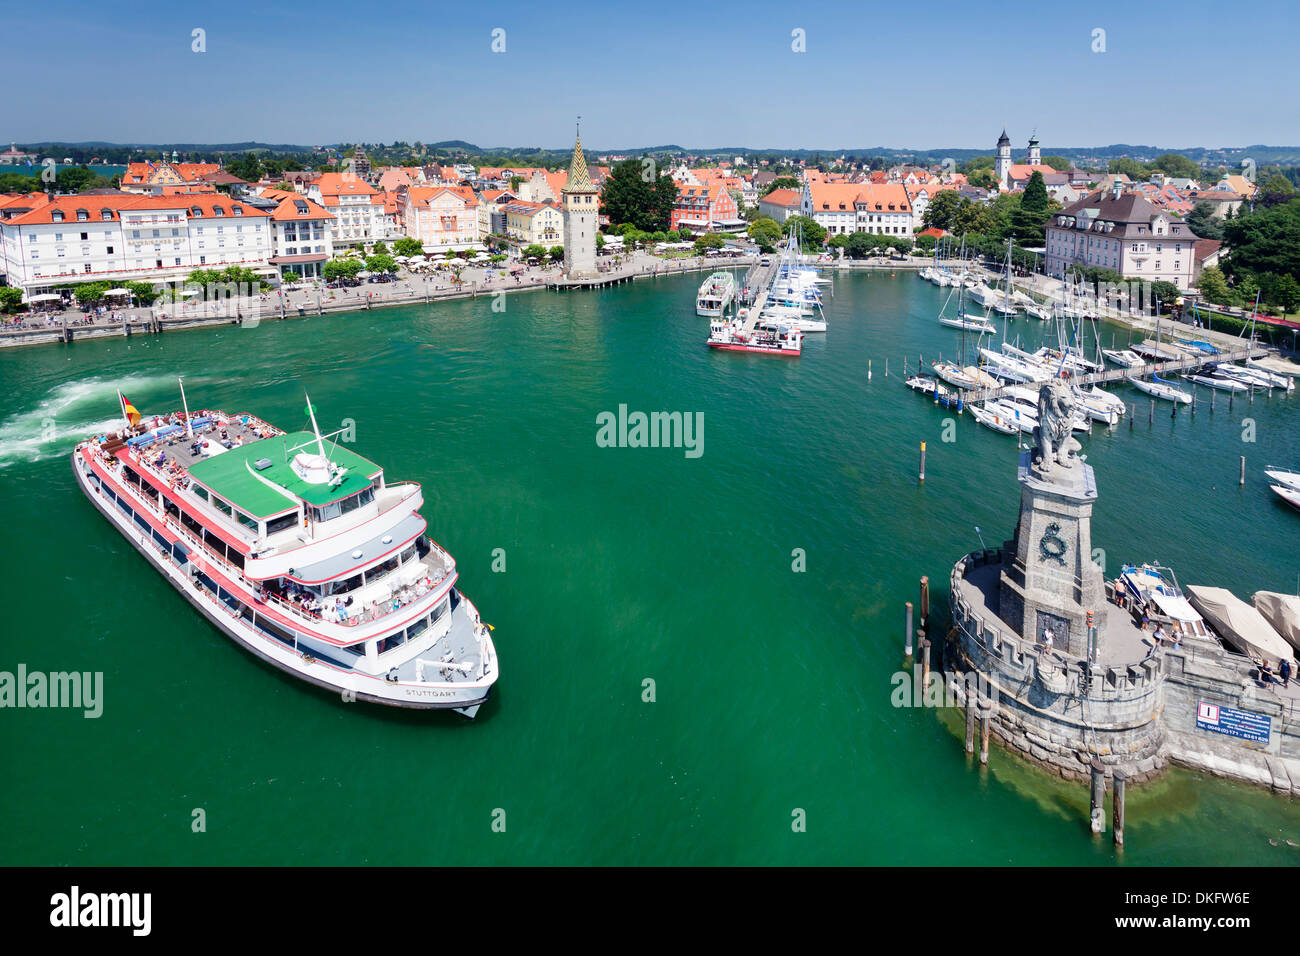 Ausflugsschiff im Hafen mit der Altstadt und die Skulptur des Bayerischen Löwen, Lindau, Bodensee, Bayern, Deutschland Stockfoto